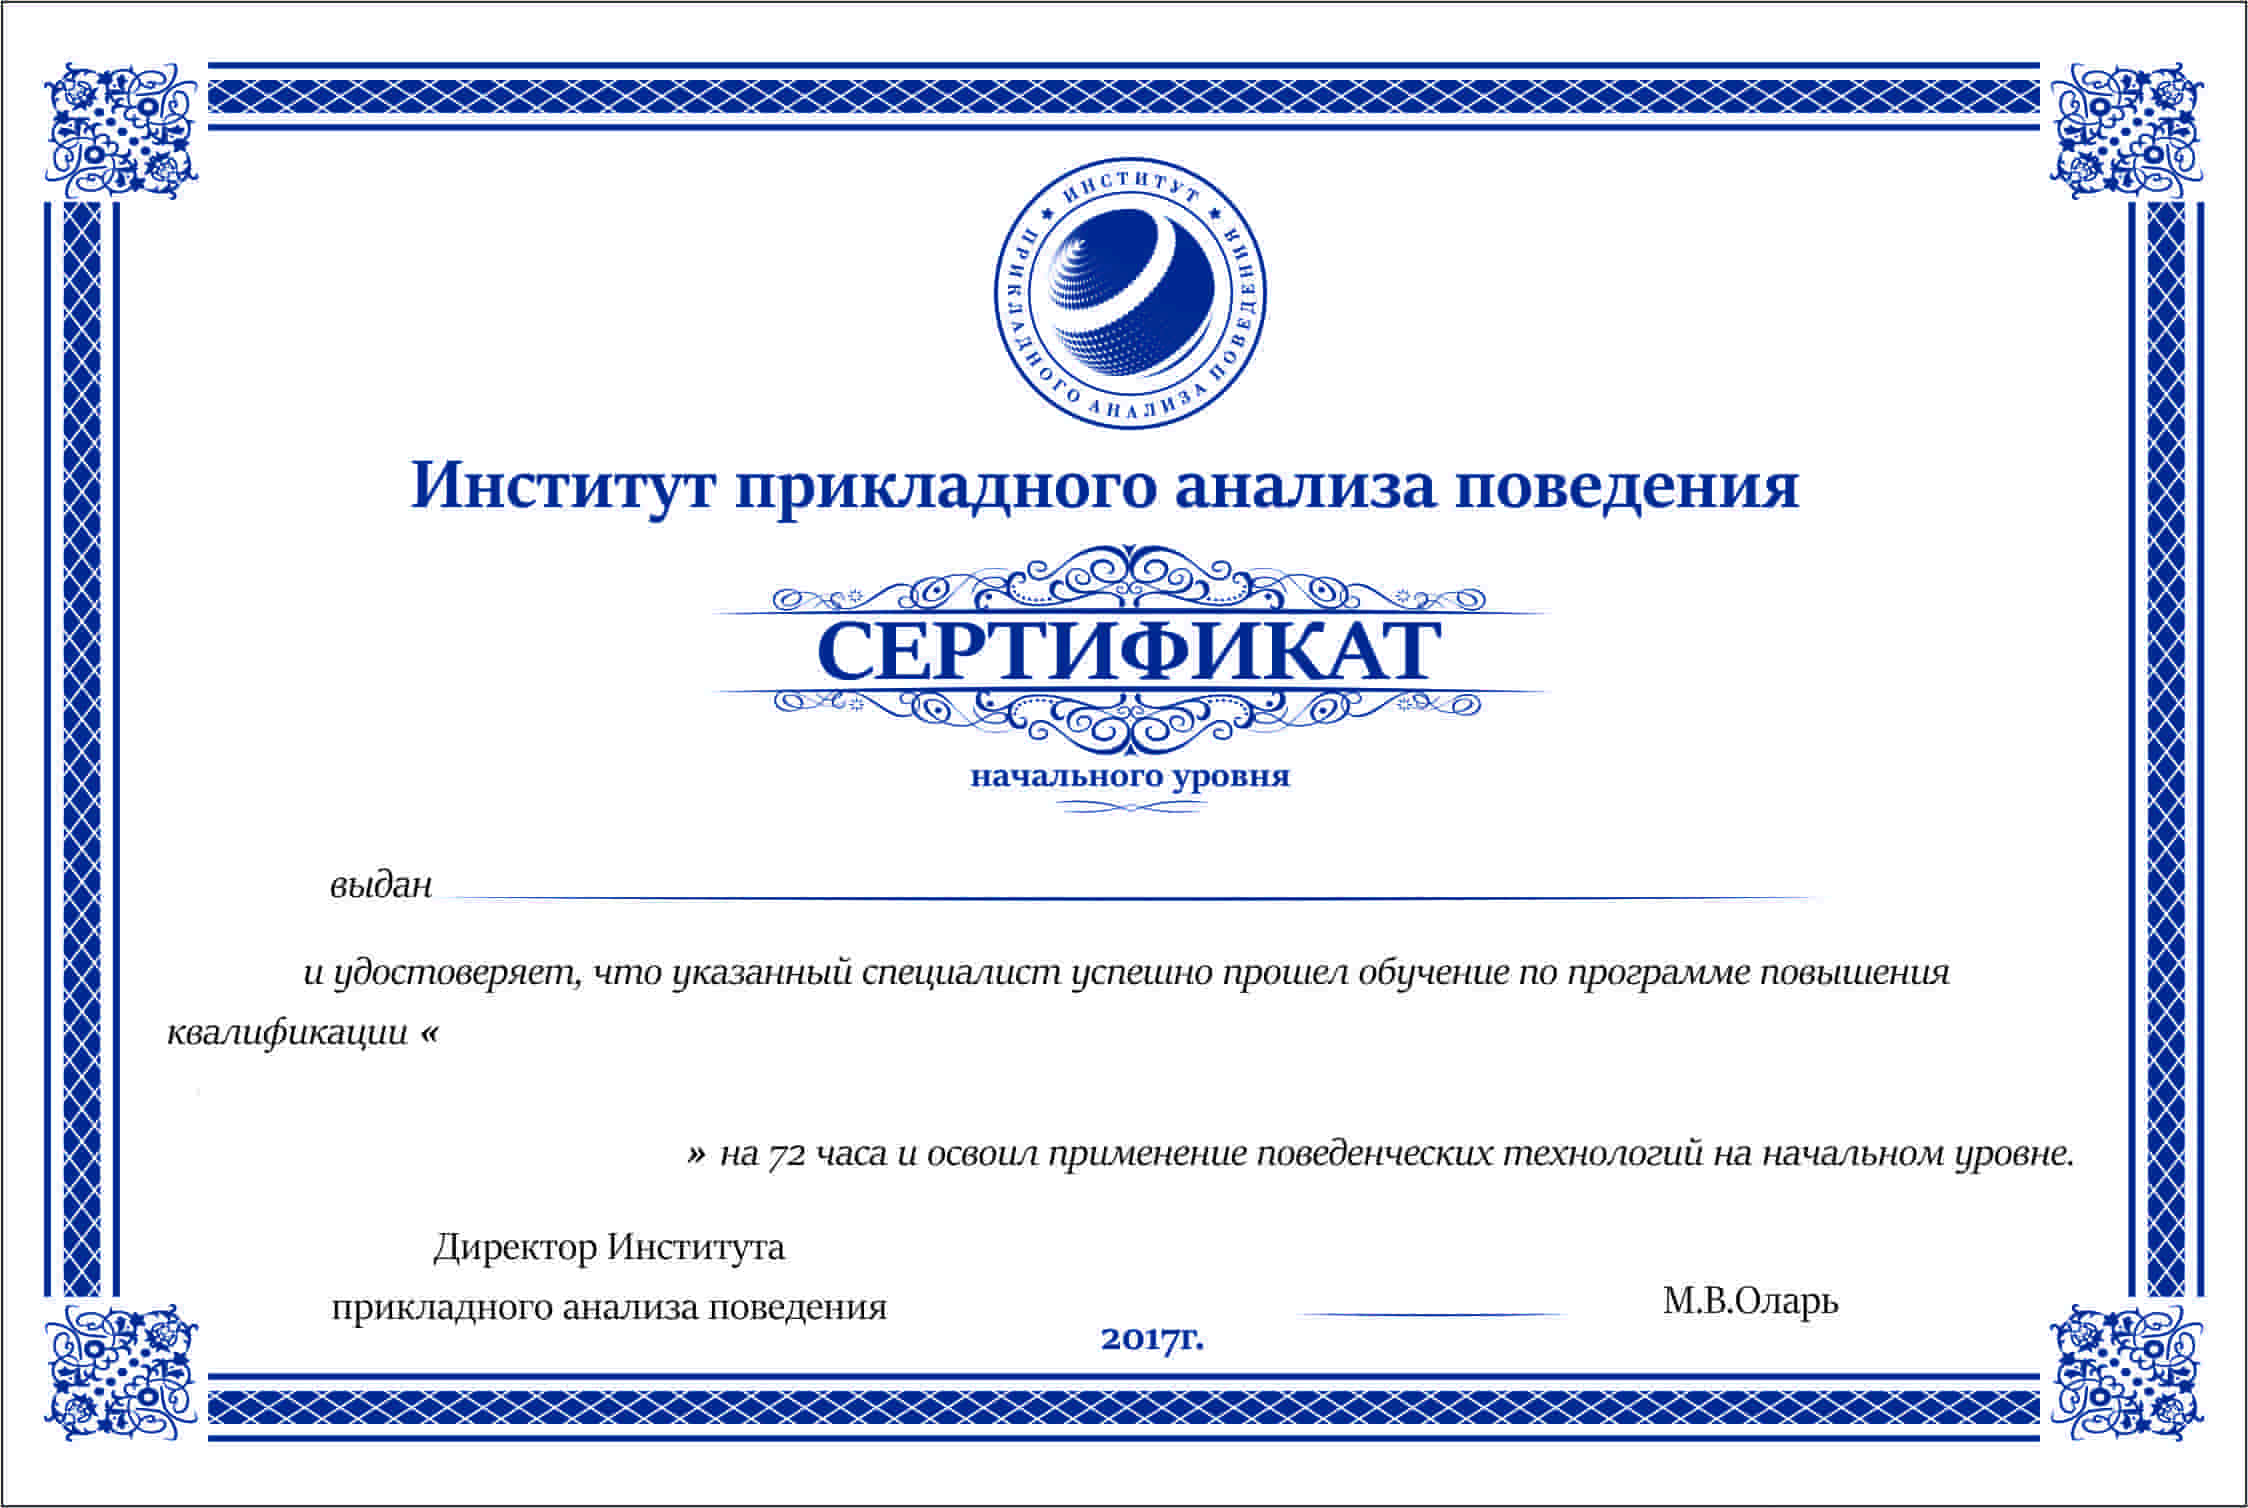 Сертификат института. Сертификат учебного заведения. Сертификат прикладного анализа поведения. Выданные учебном центром